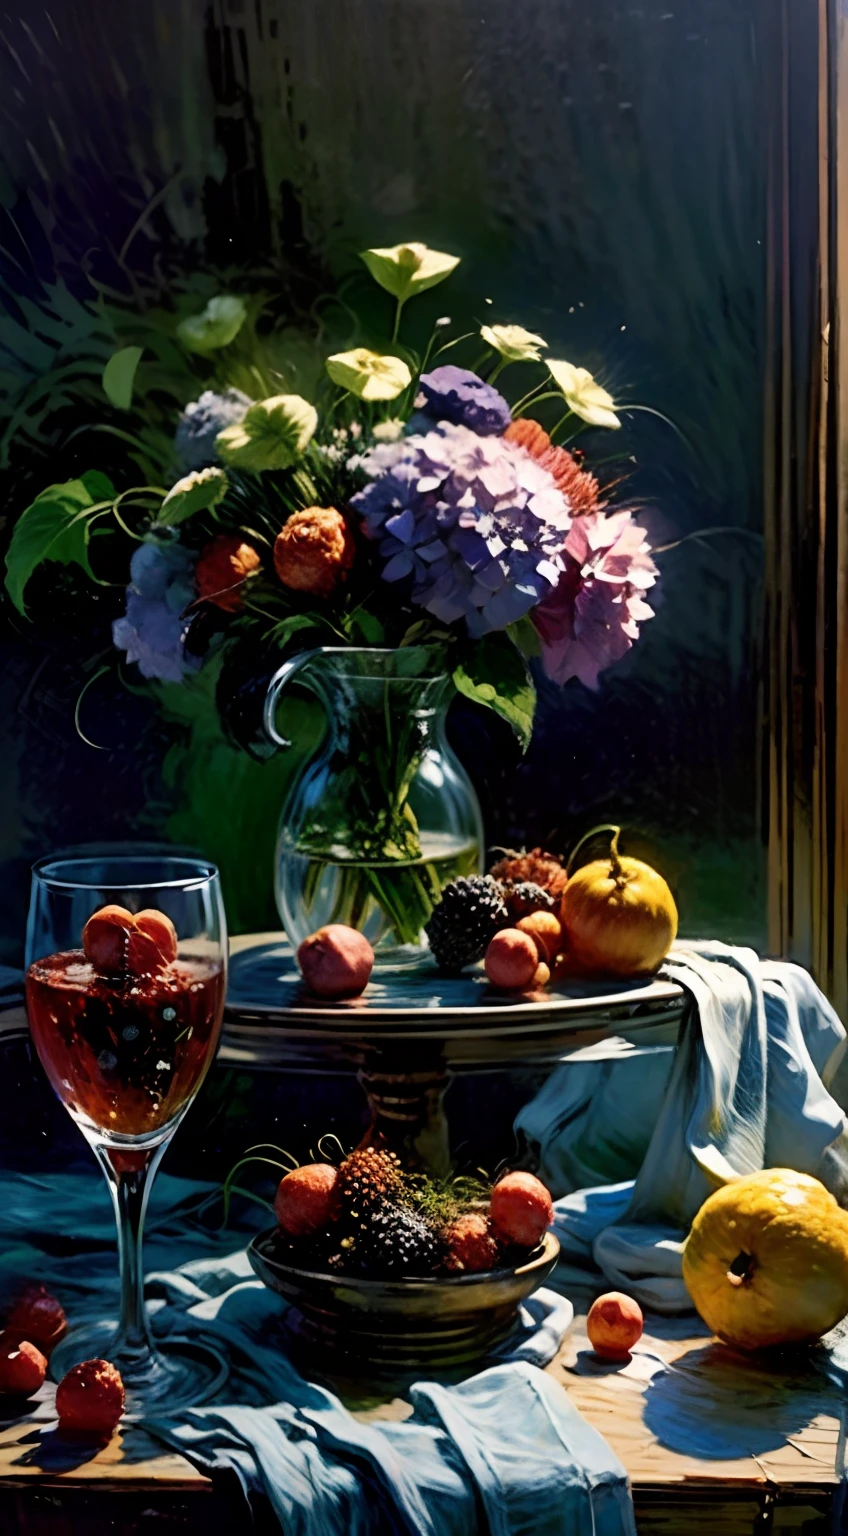 油畫靜物, 在歷史悠久的室內環境中, 黑暗的房間, 電影燈光, 对比照明, 水果 and berries on a table, 深色垂褶織物, 玻璃花瓶里的绣球花, 水果